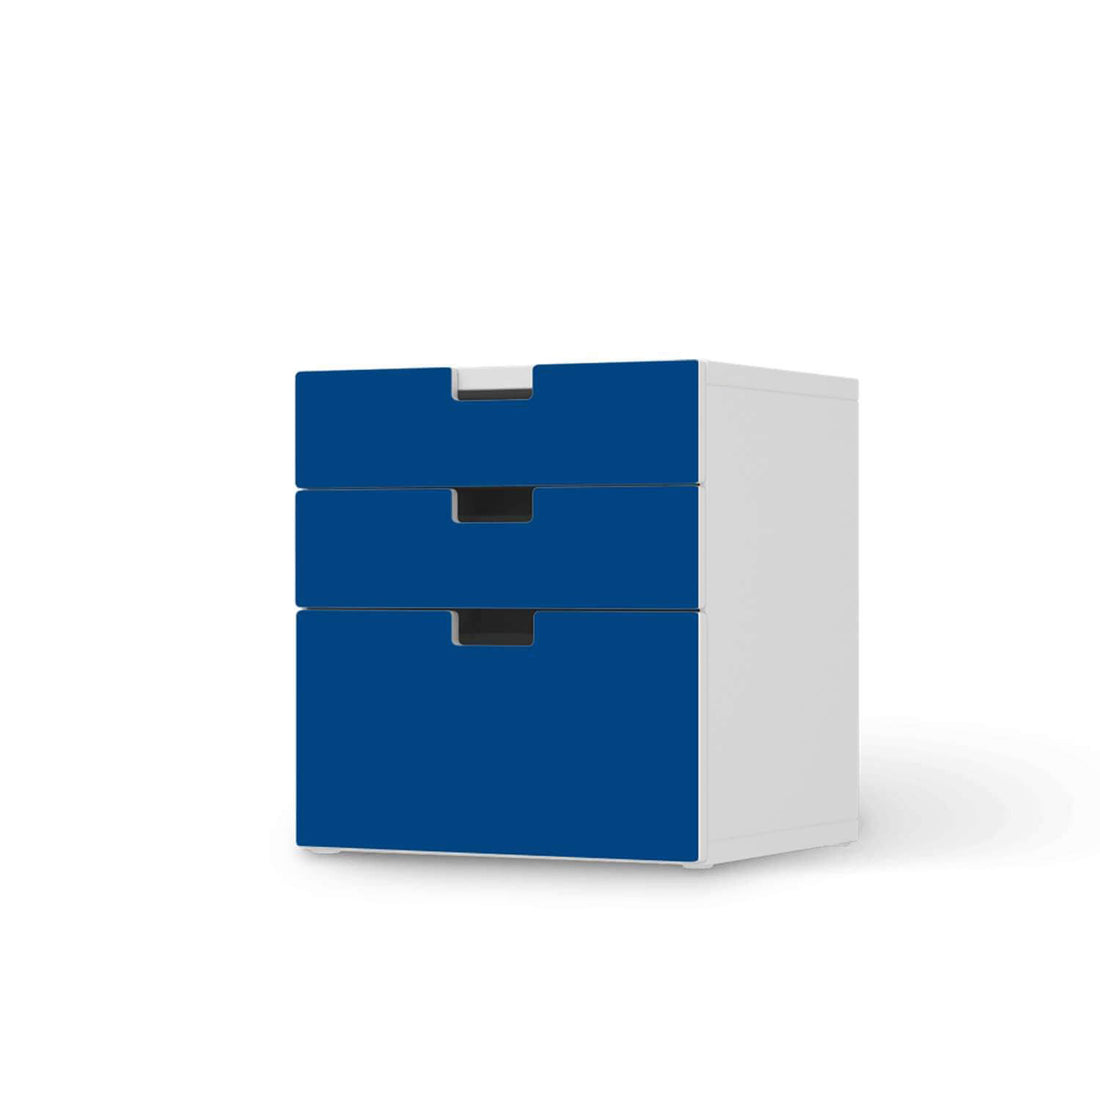 Folie für Möbel Blau Dark - IKEA Stuva Kommode - 3 Schubladen (Kombination 1)  - weiss